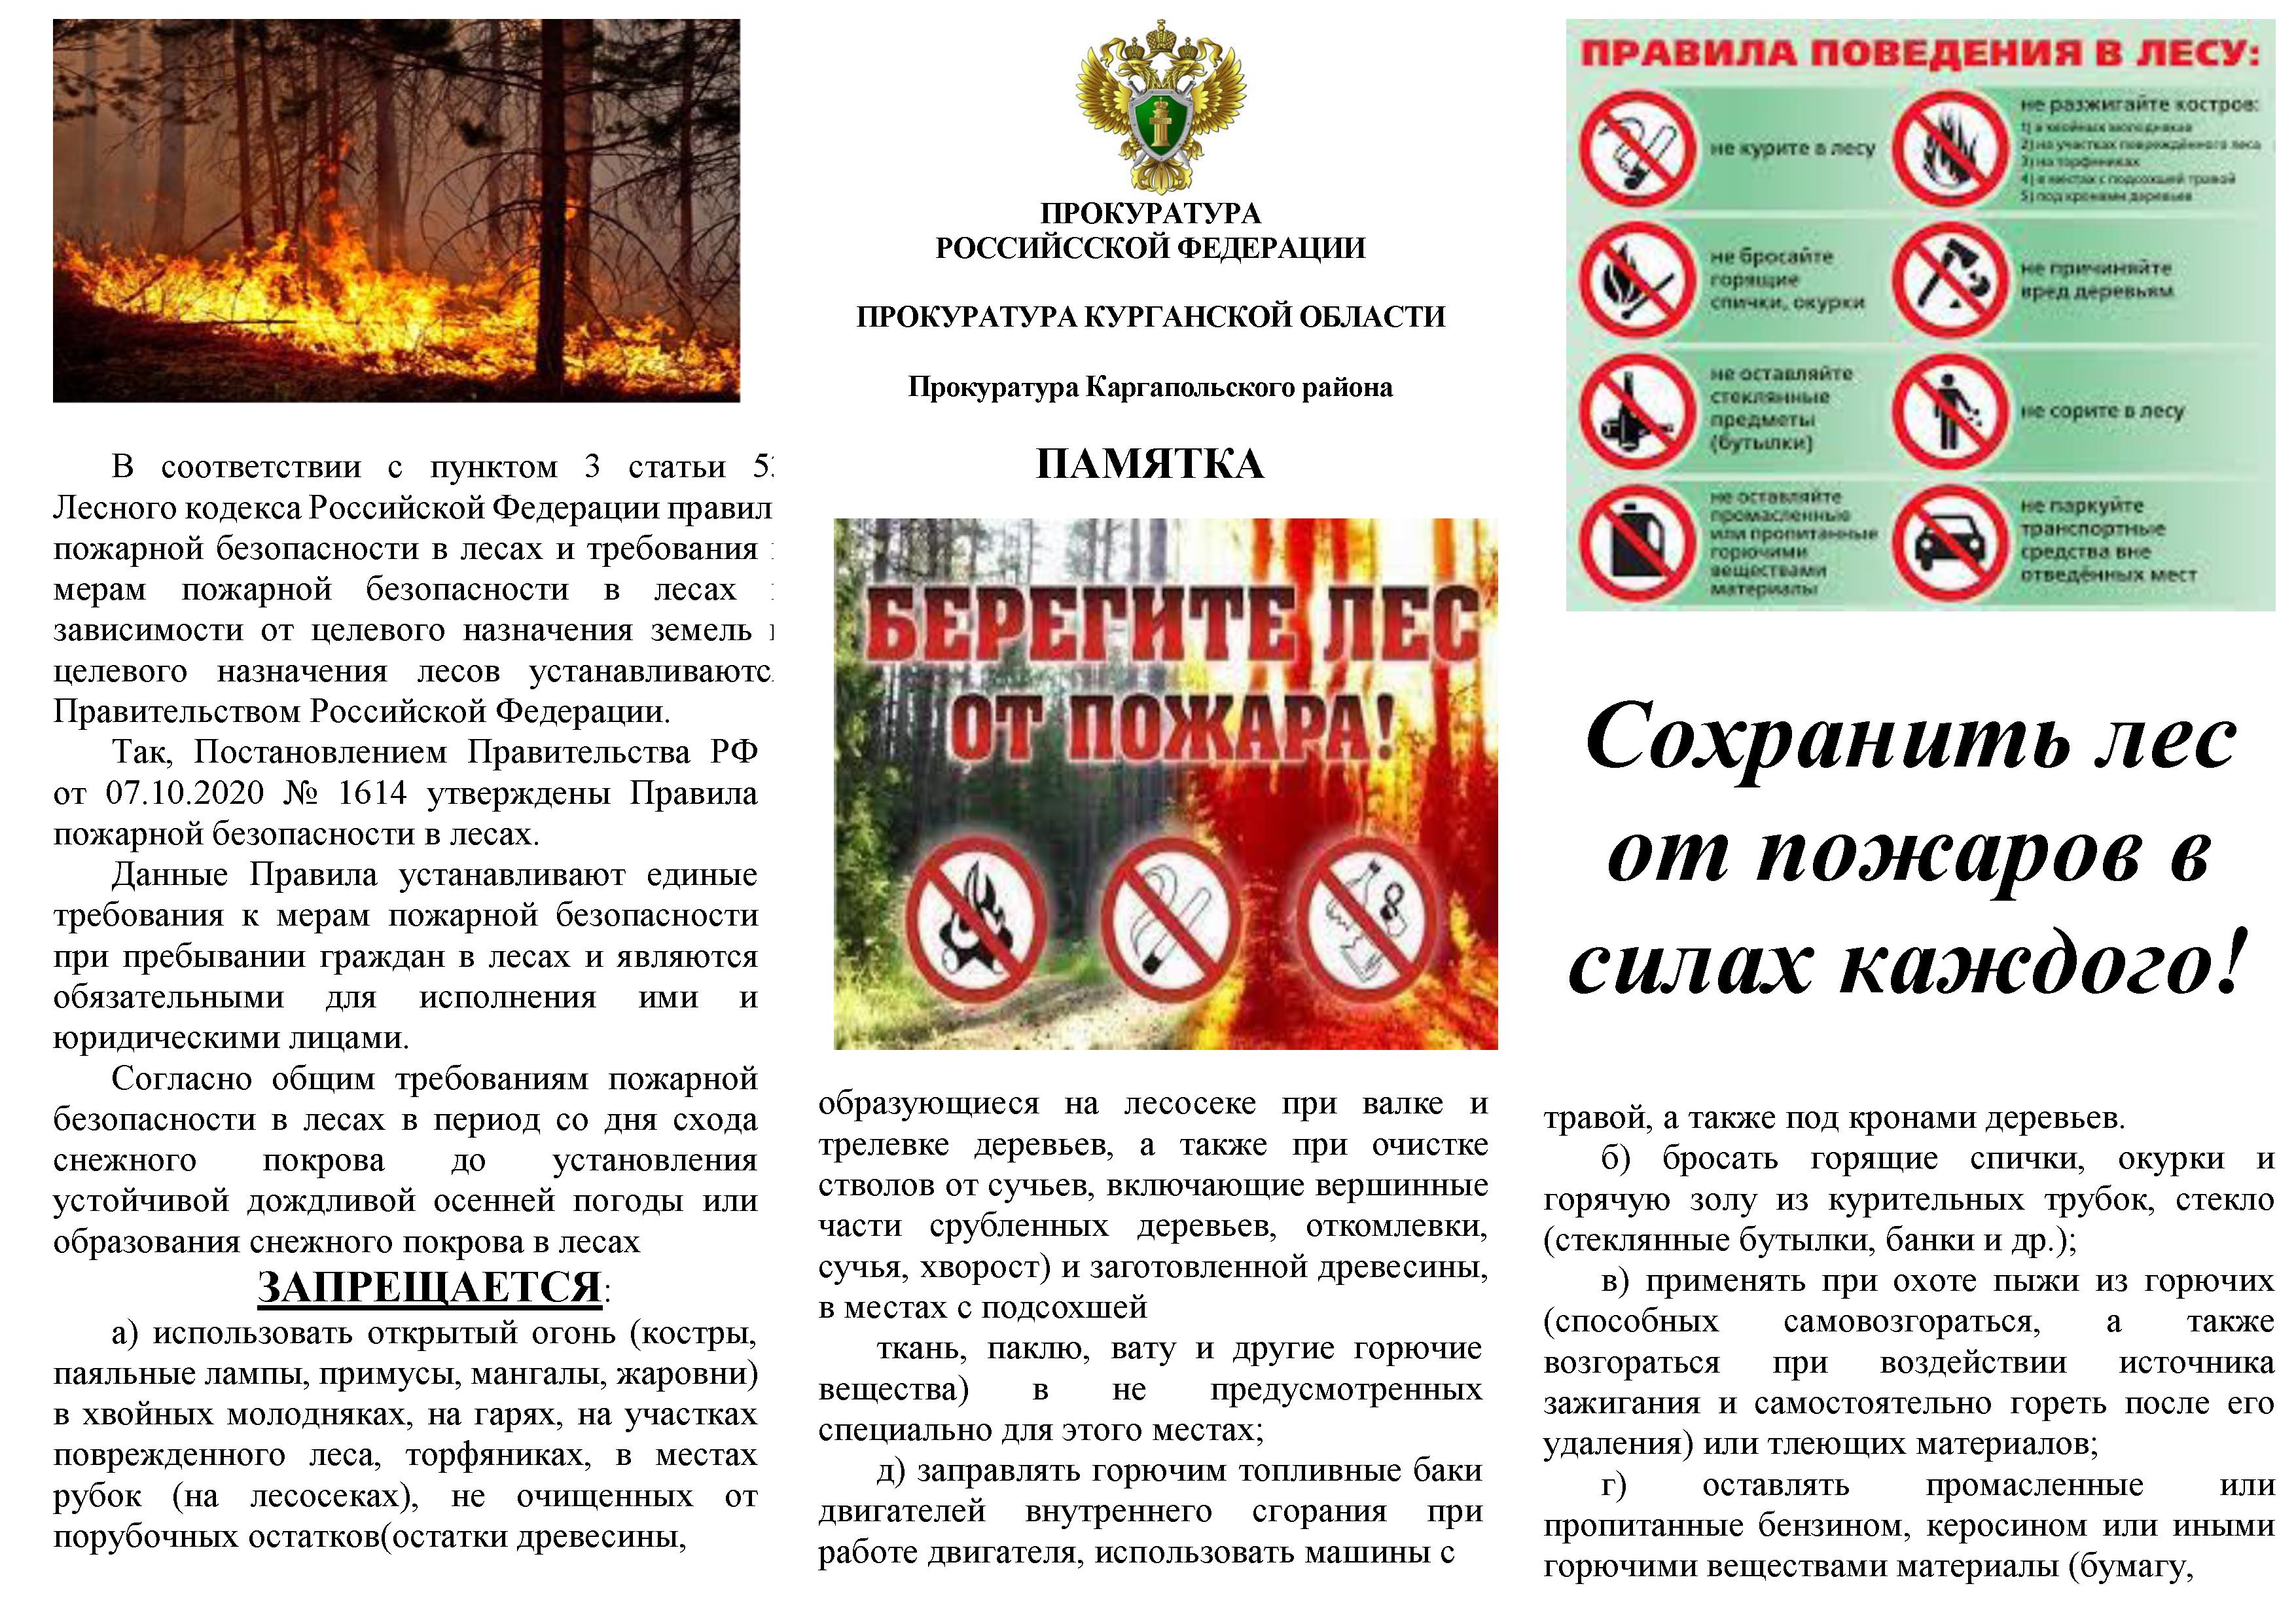 Прокуратура Каргапольского района разъясняет положения законодательства Российской Федерации в сфере пожарной безопасности.